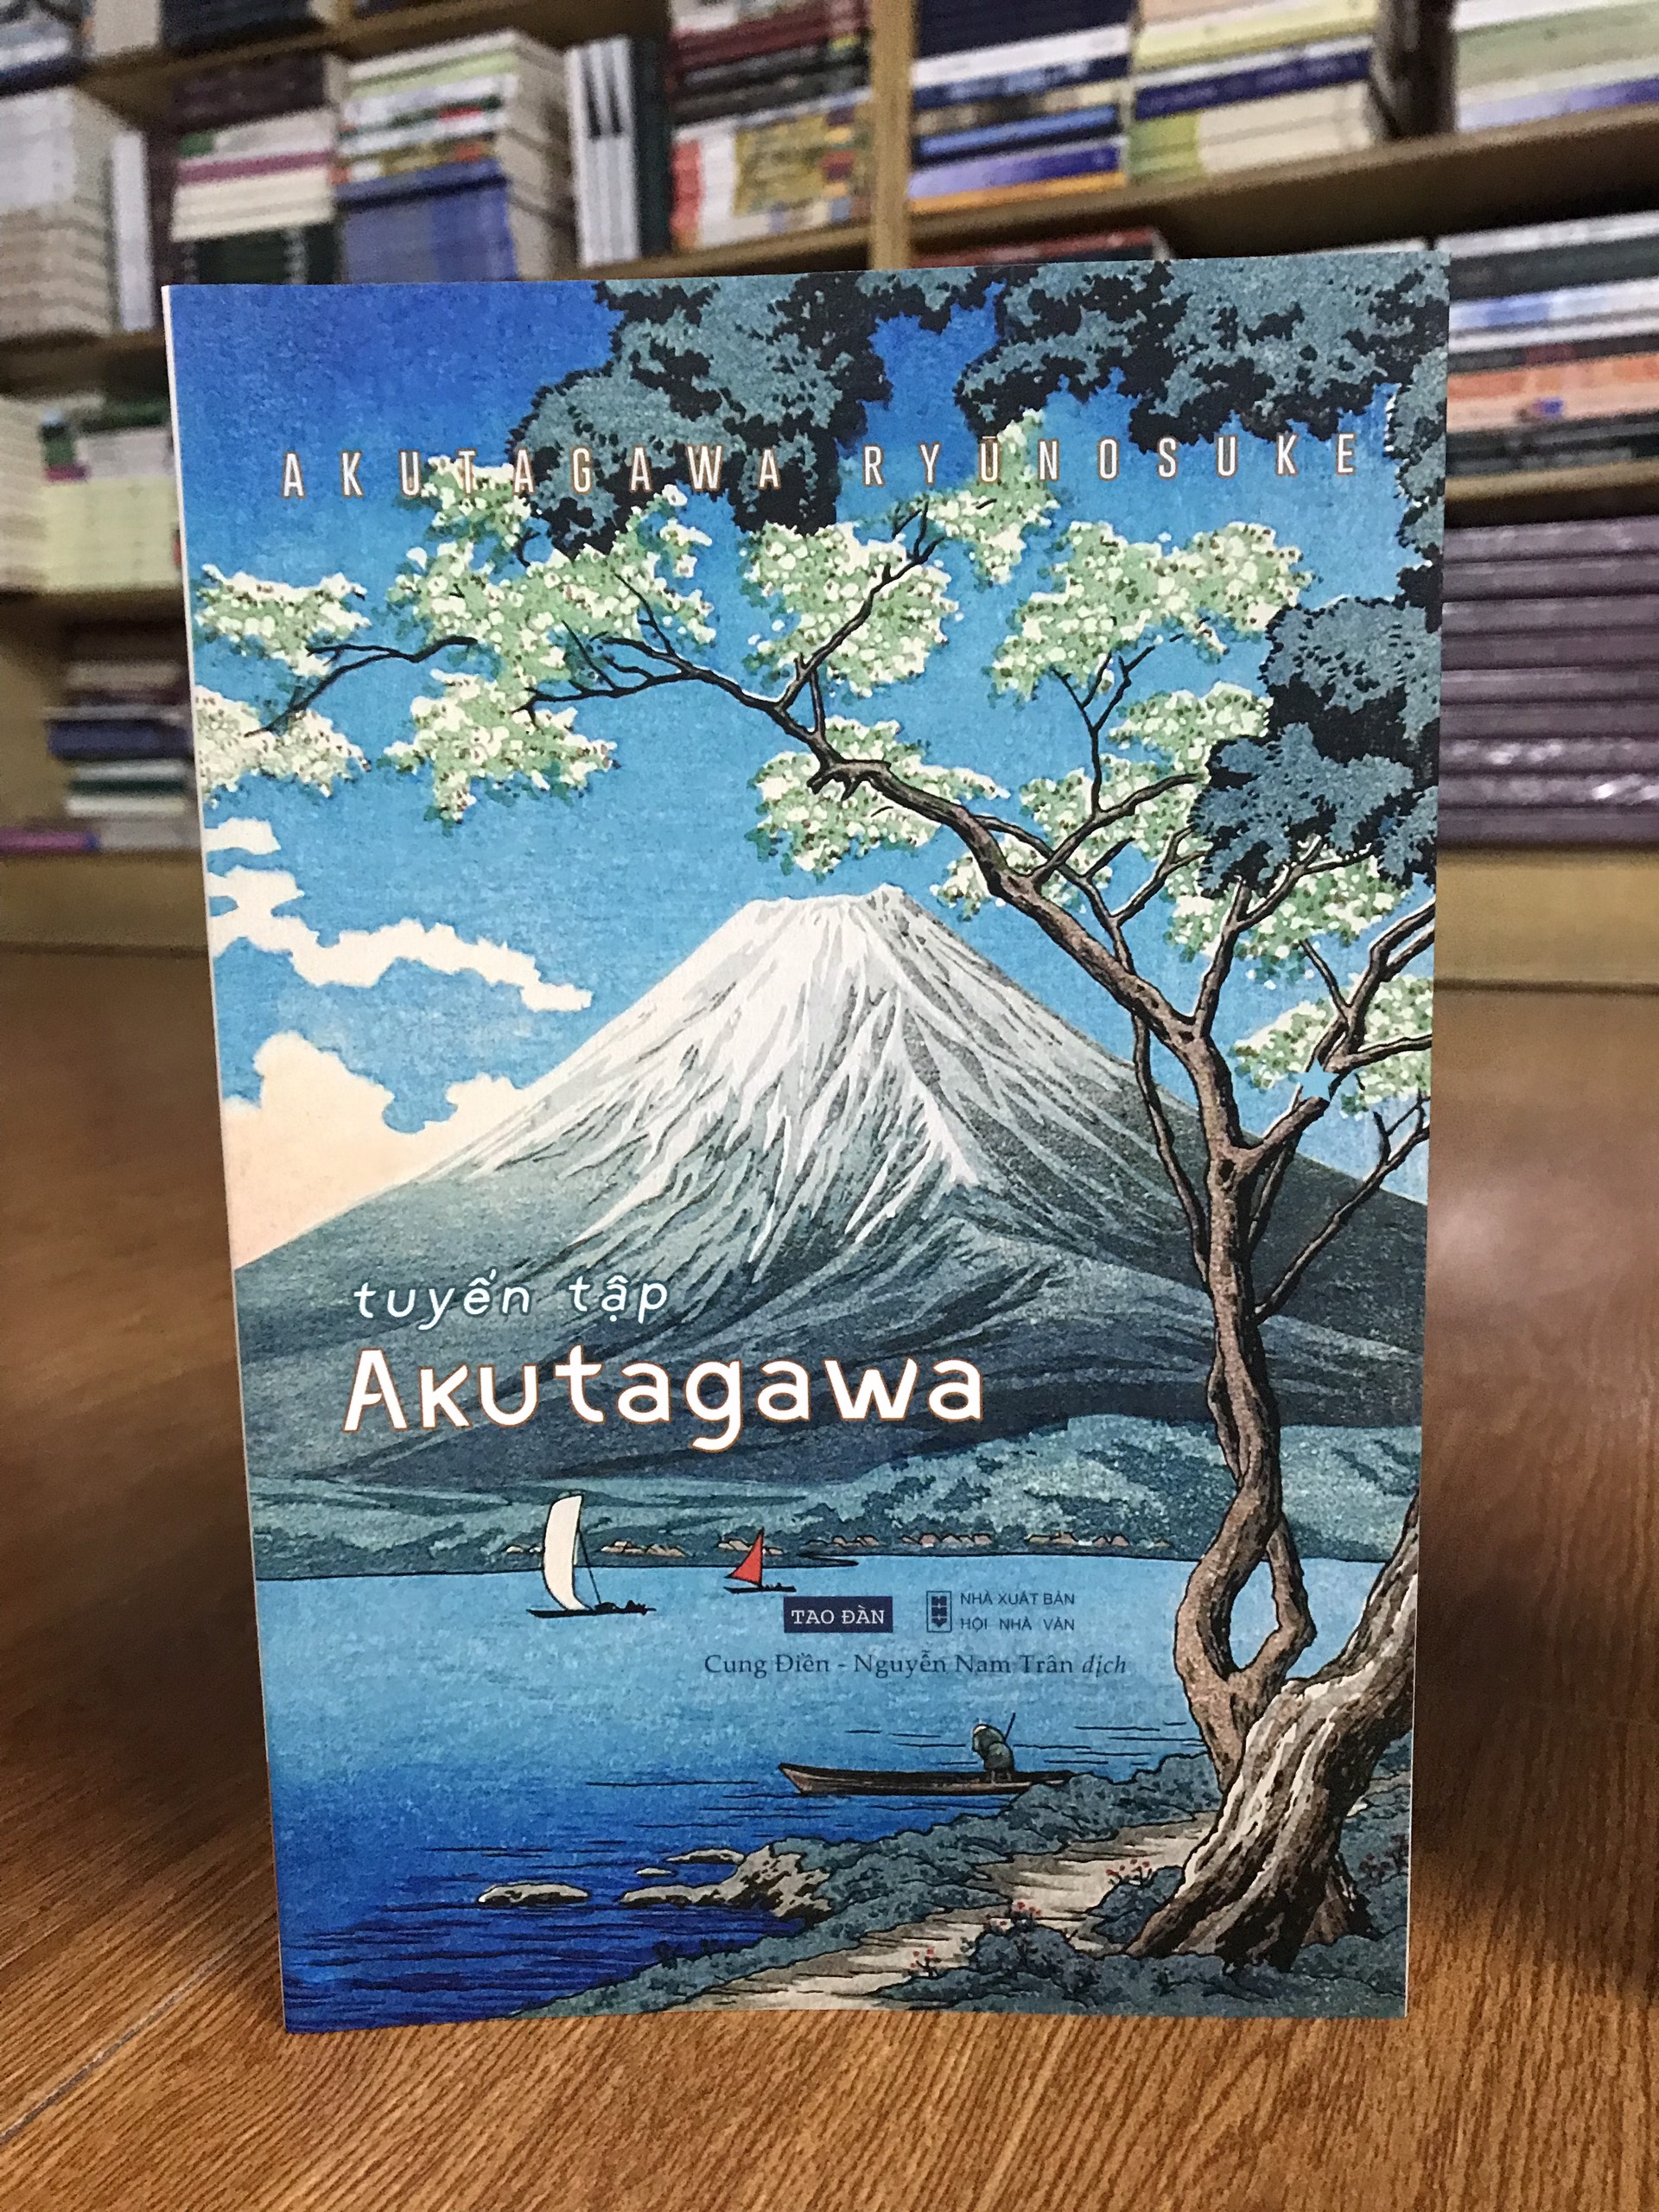 Combo văn học kinh điển Nhật Bản: Tuyển tập Mori Ogai + Akutagawa I + Thất lạc cõi người (tặng kèm bookmark)